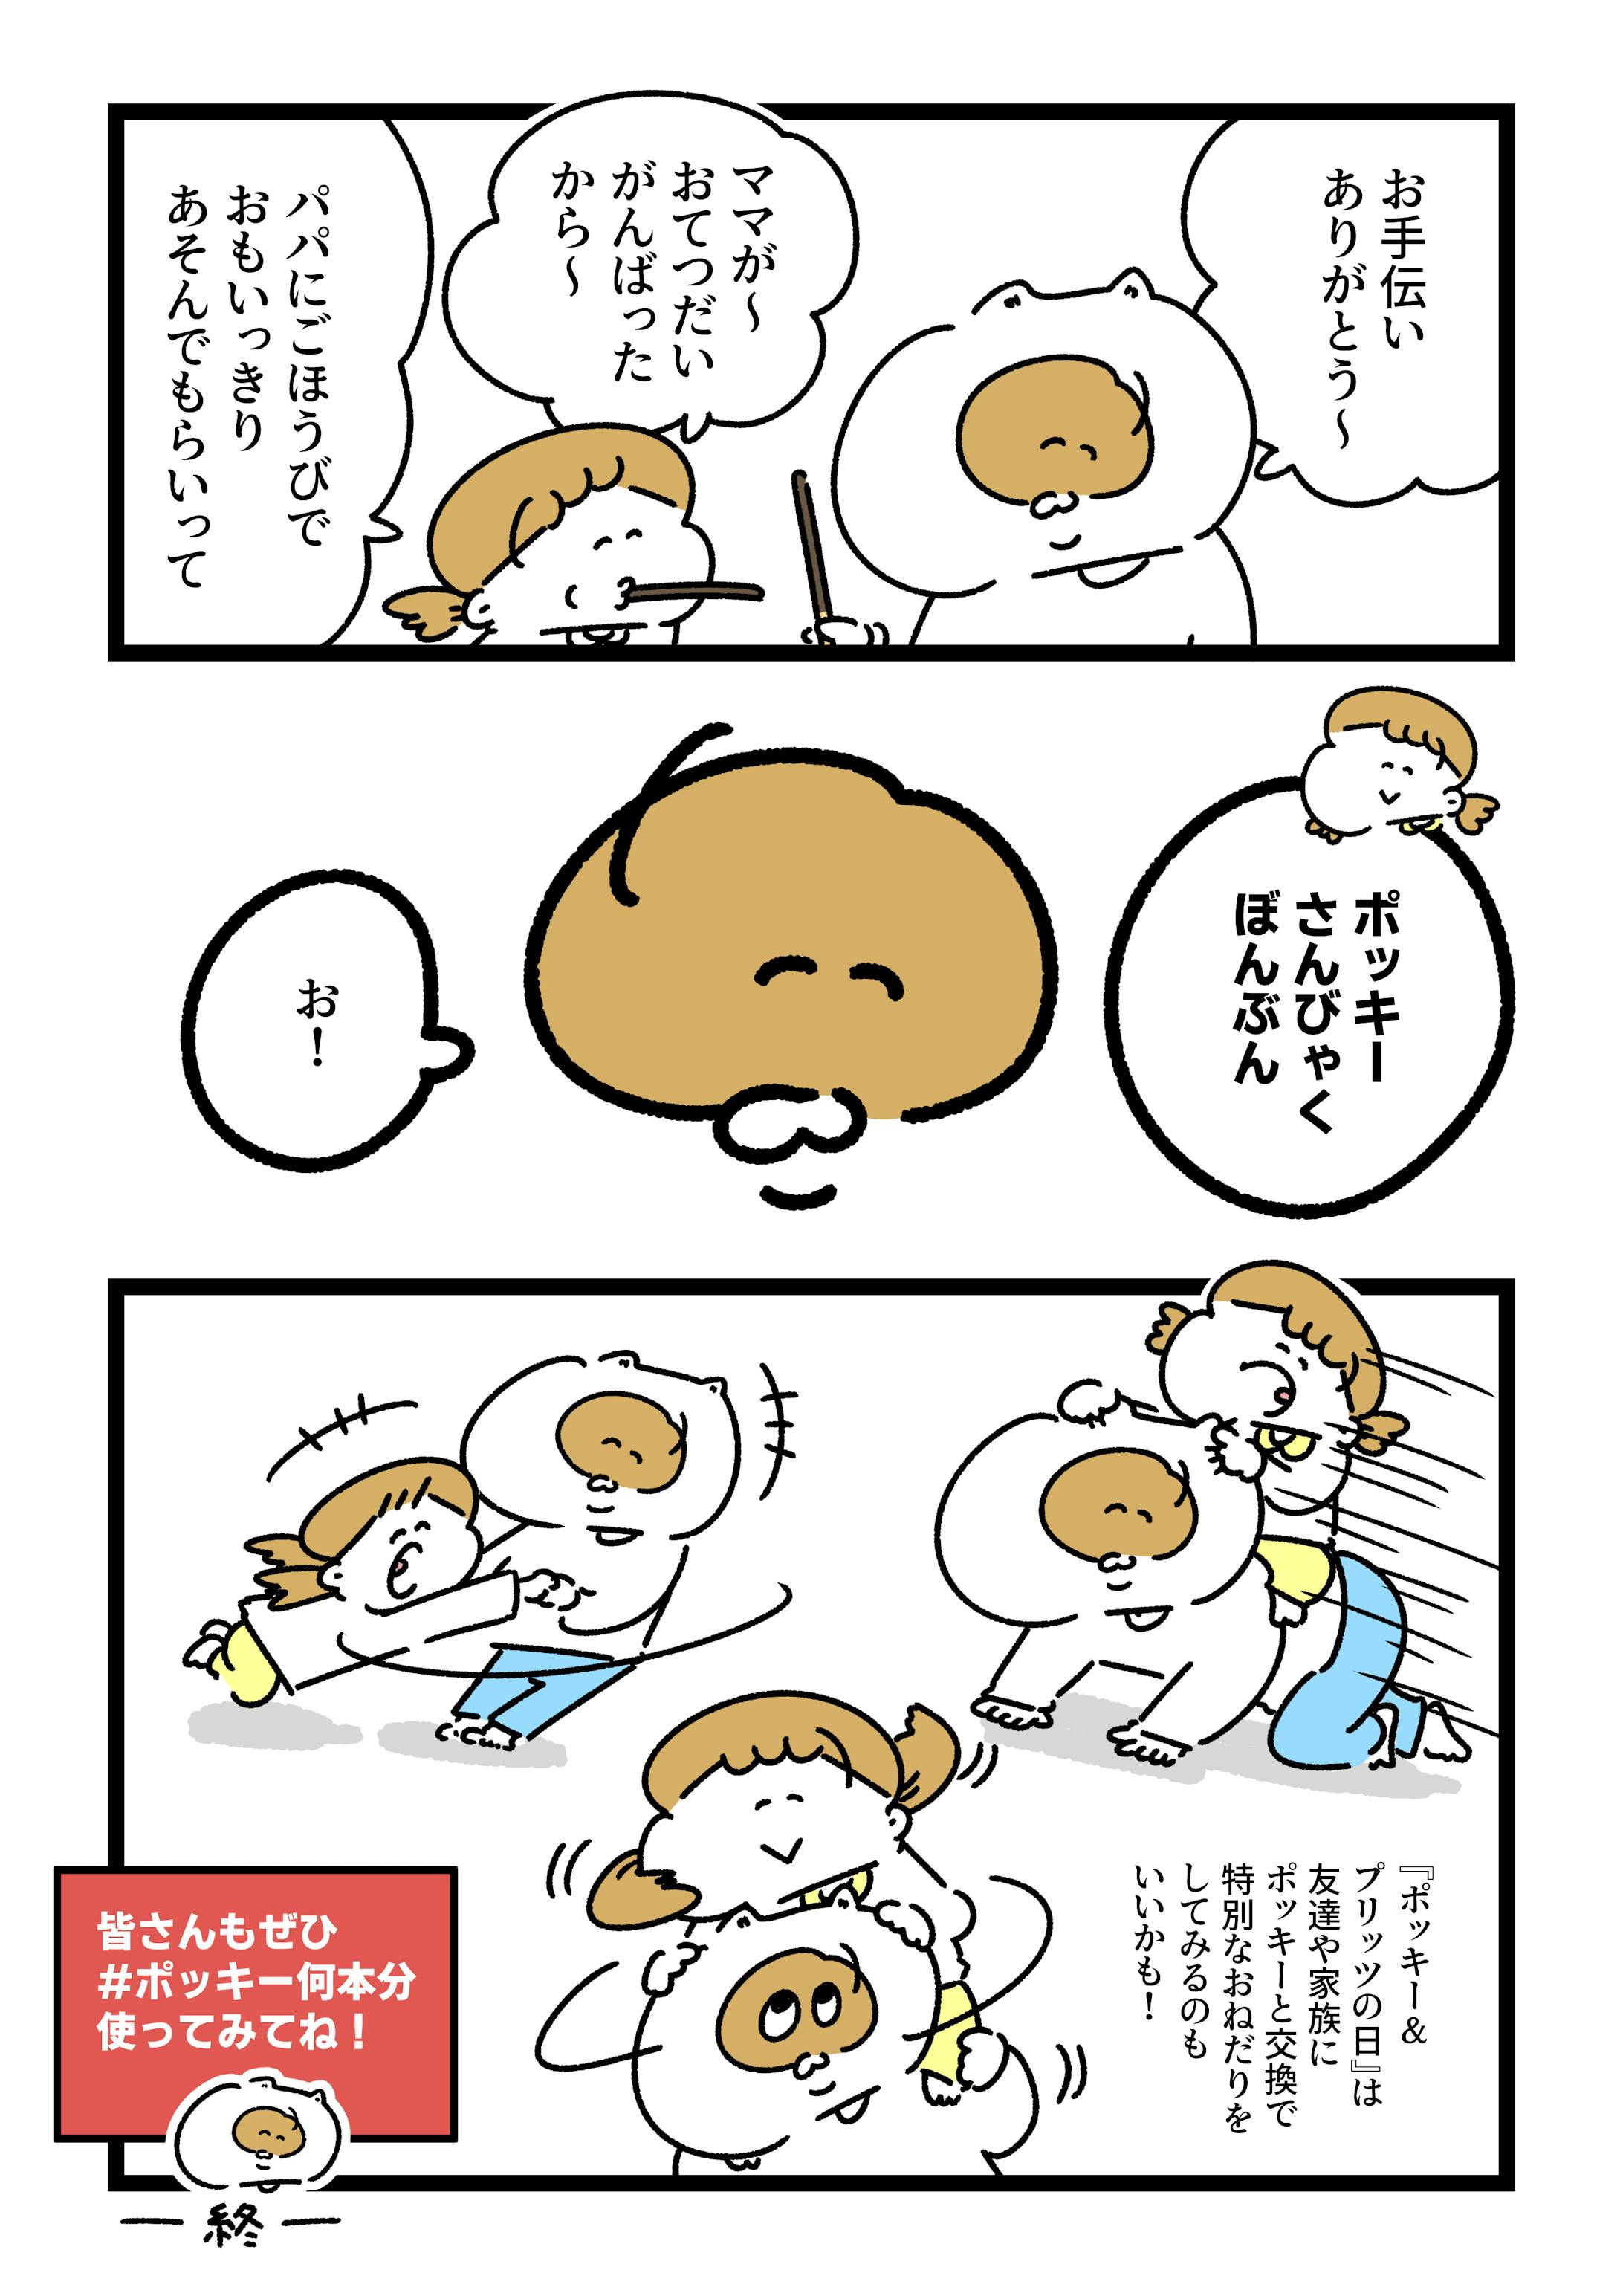 江崎グリコ様『ポッキーの日』PR漫画-3